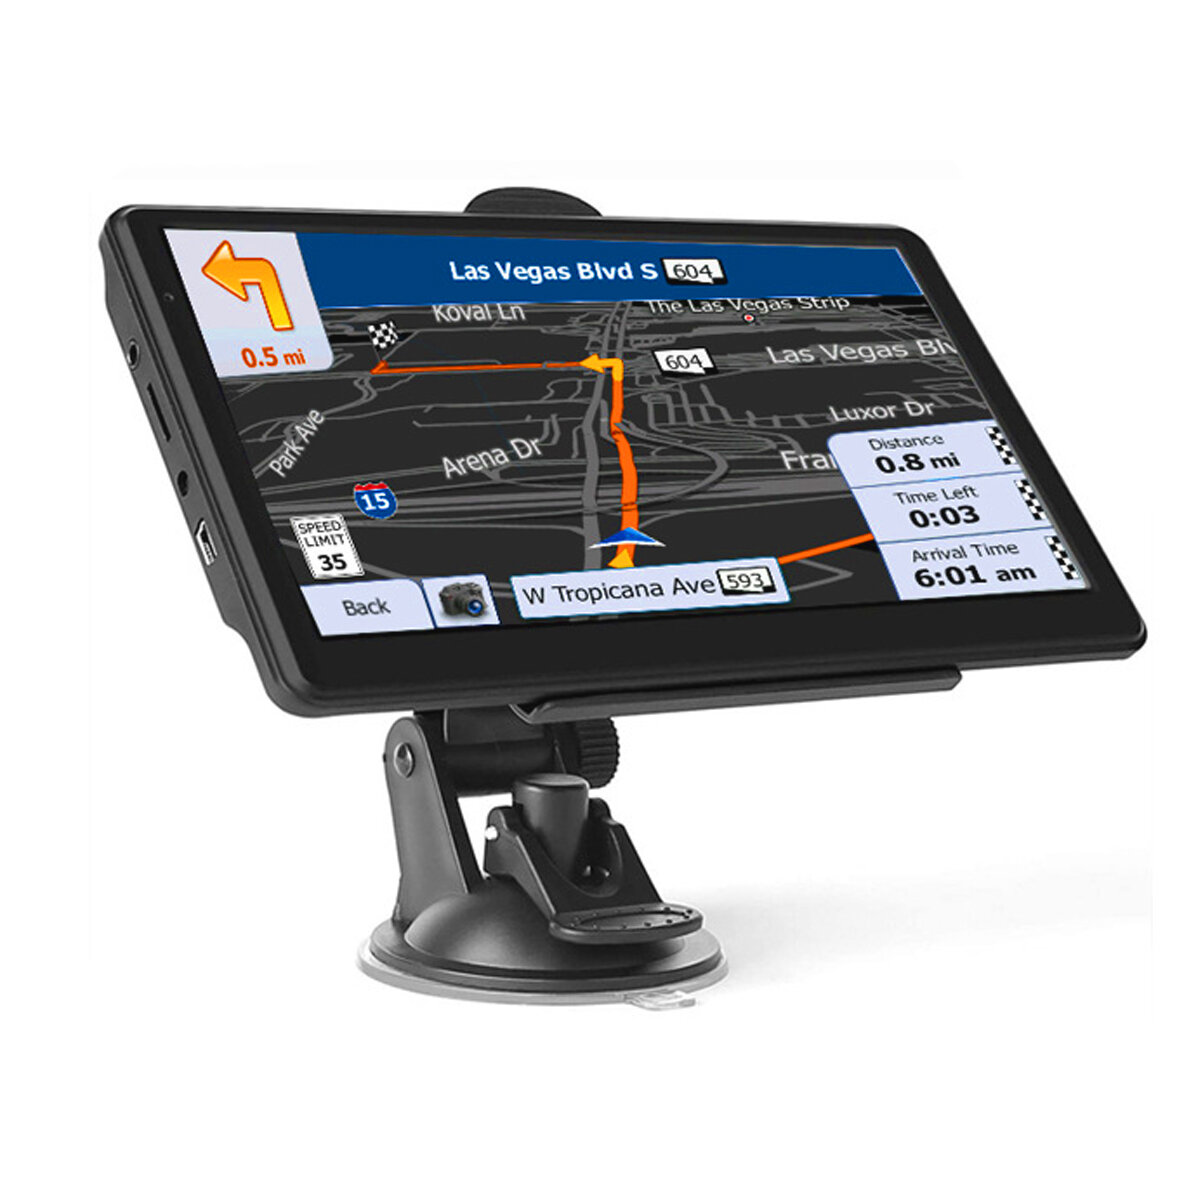 

7 дюймов 256M+8G Многофункциональный Авто GPS навигация Сенсорный экран Голосовое напоминание Бесплатное обновление MP3-